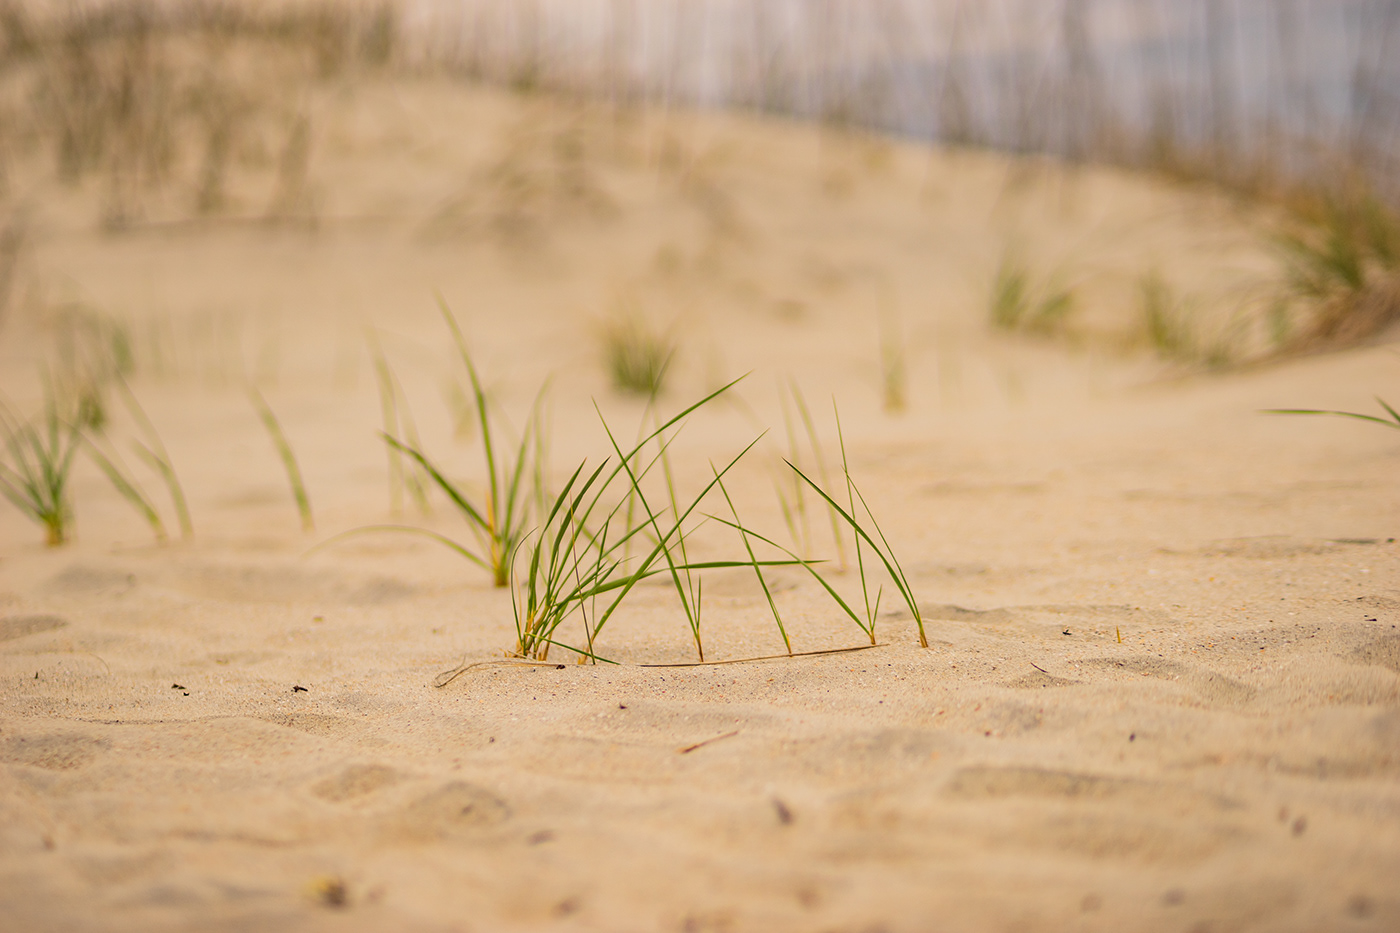 beach beach grass Beach walkway Beachgrass bent grass boardwalk coastal dune dunes flowering plants